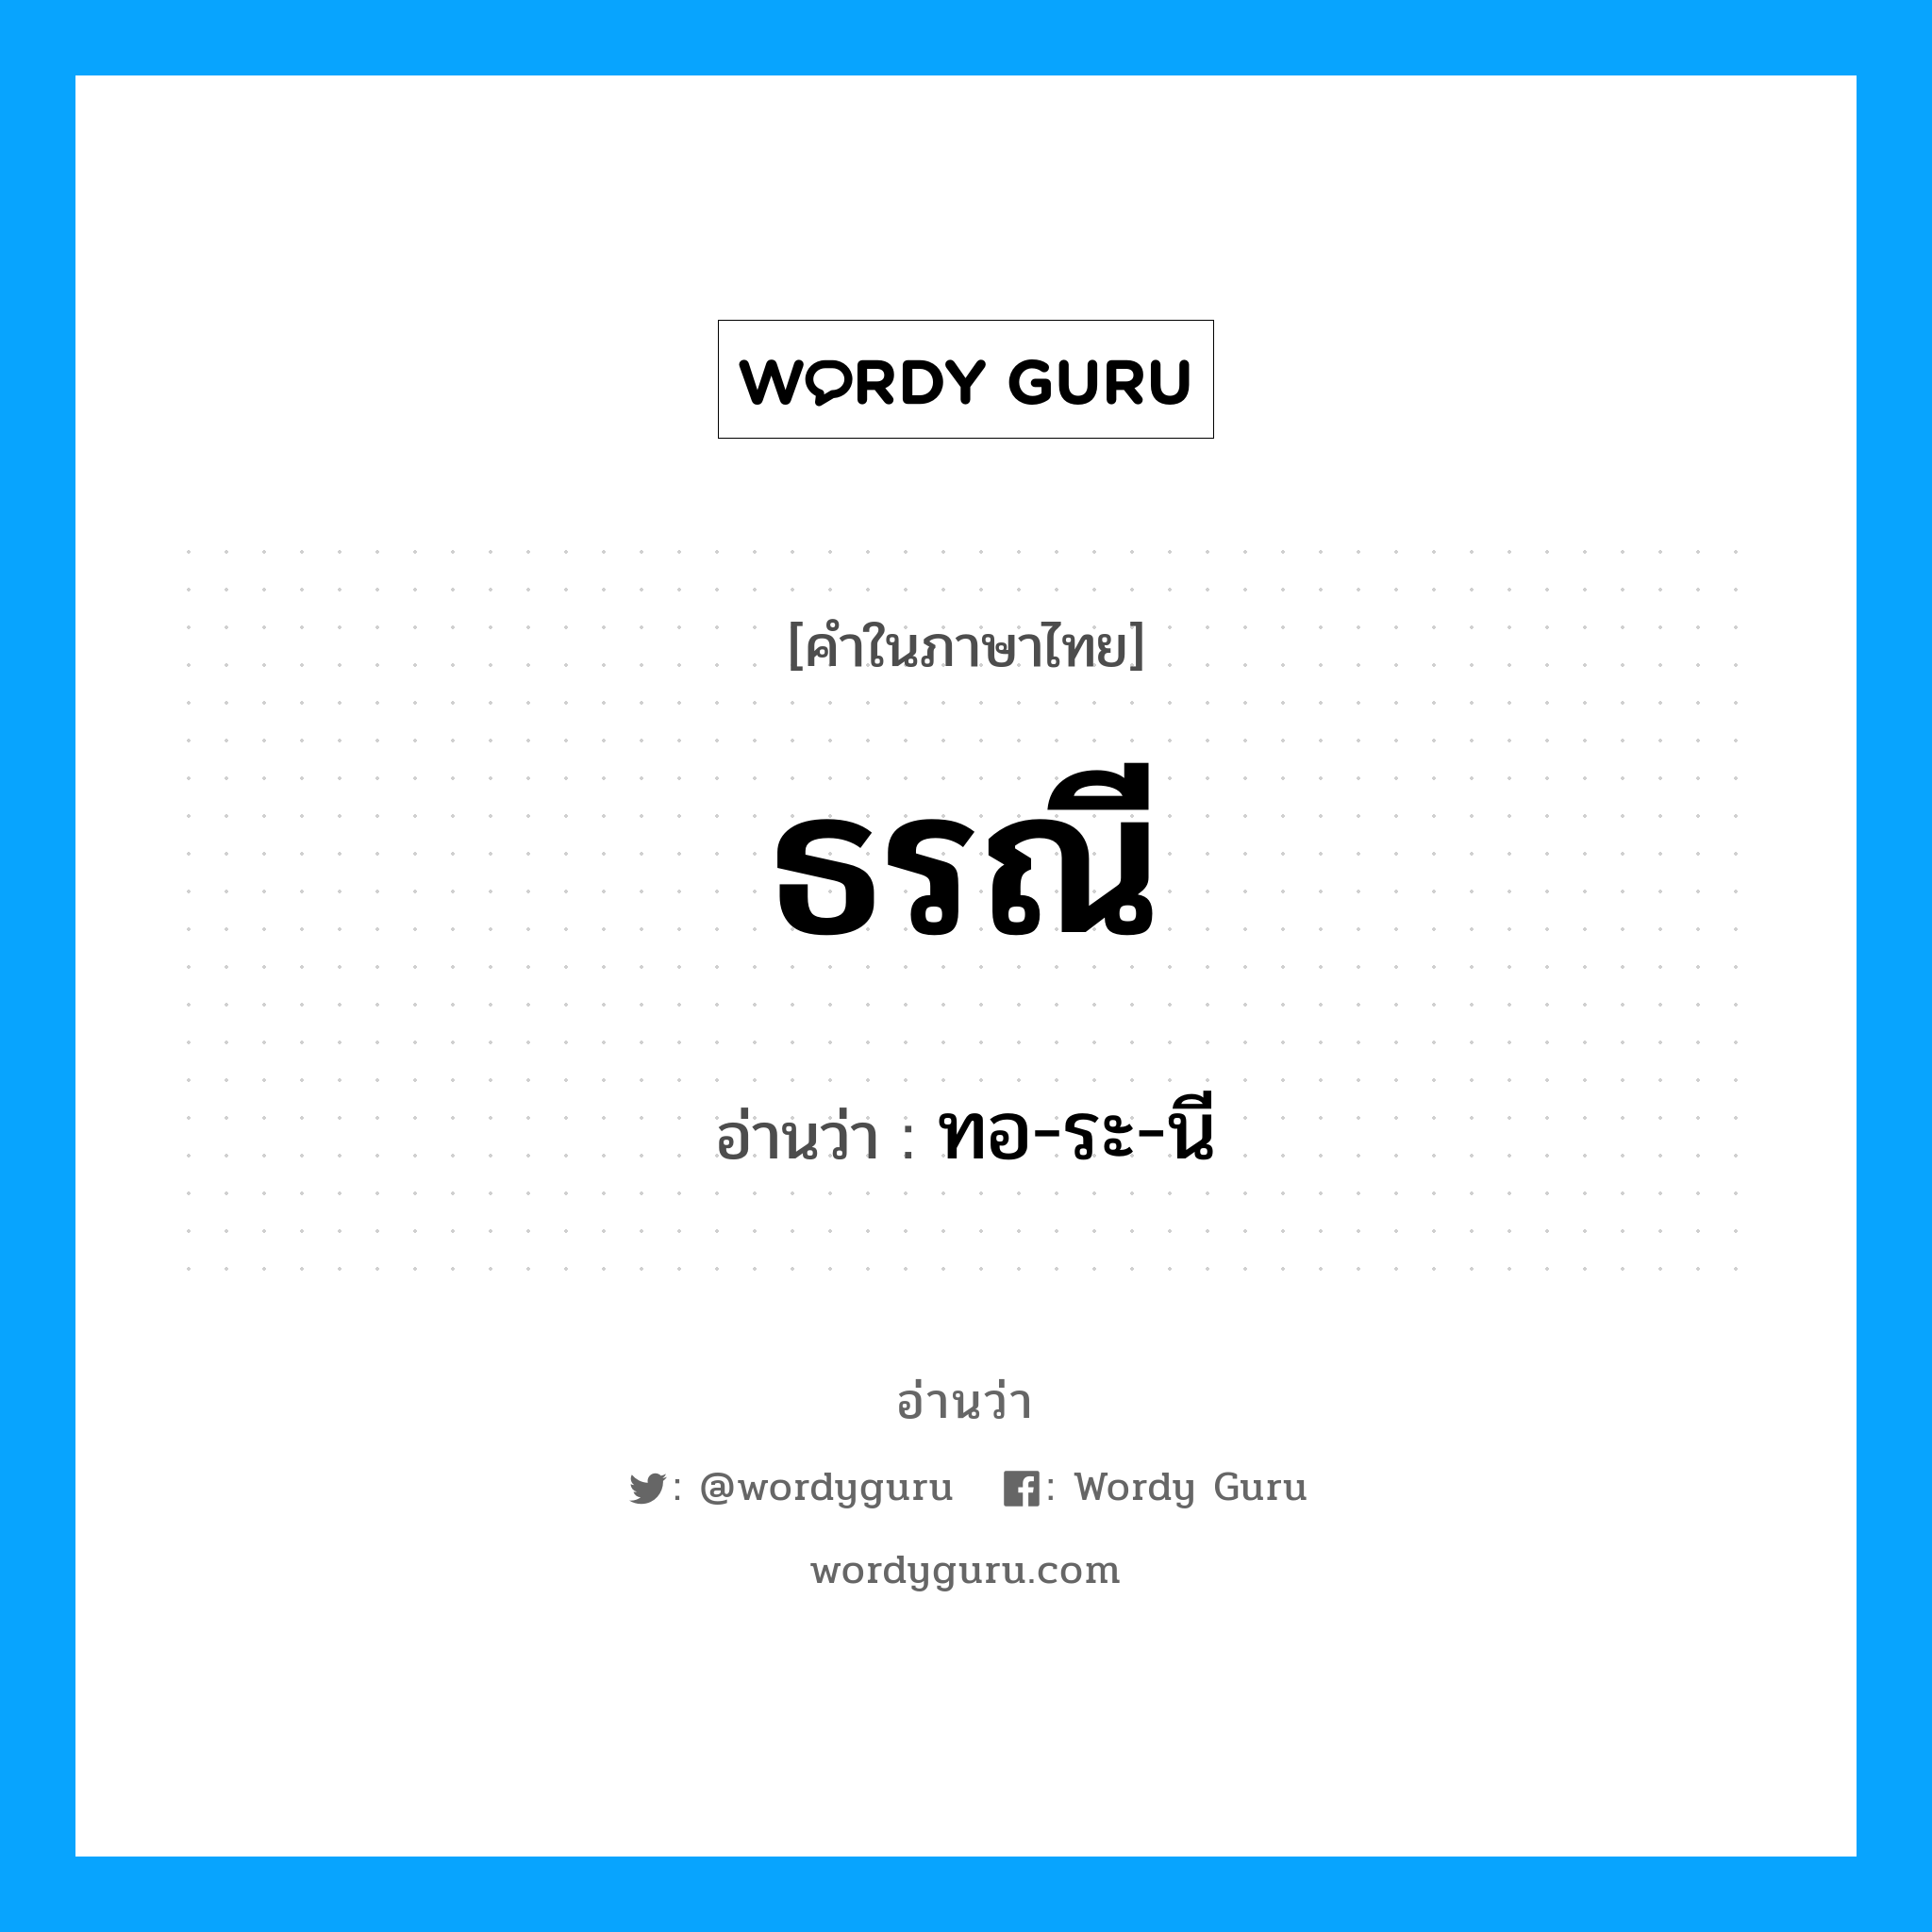 ทอ-ระ-นี เป็นคำอ่านของคำไหน?, คำในภาษาไทย ทอ-ระ-นี อ่านว่า ธรณี